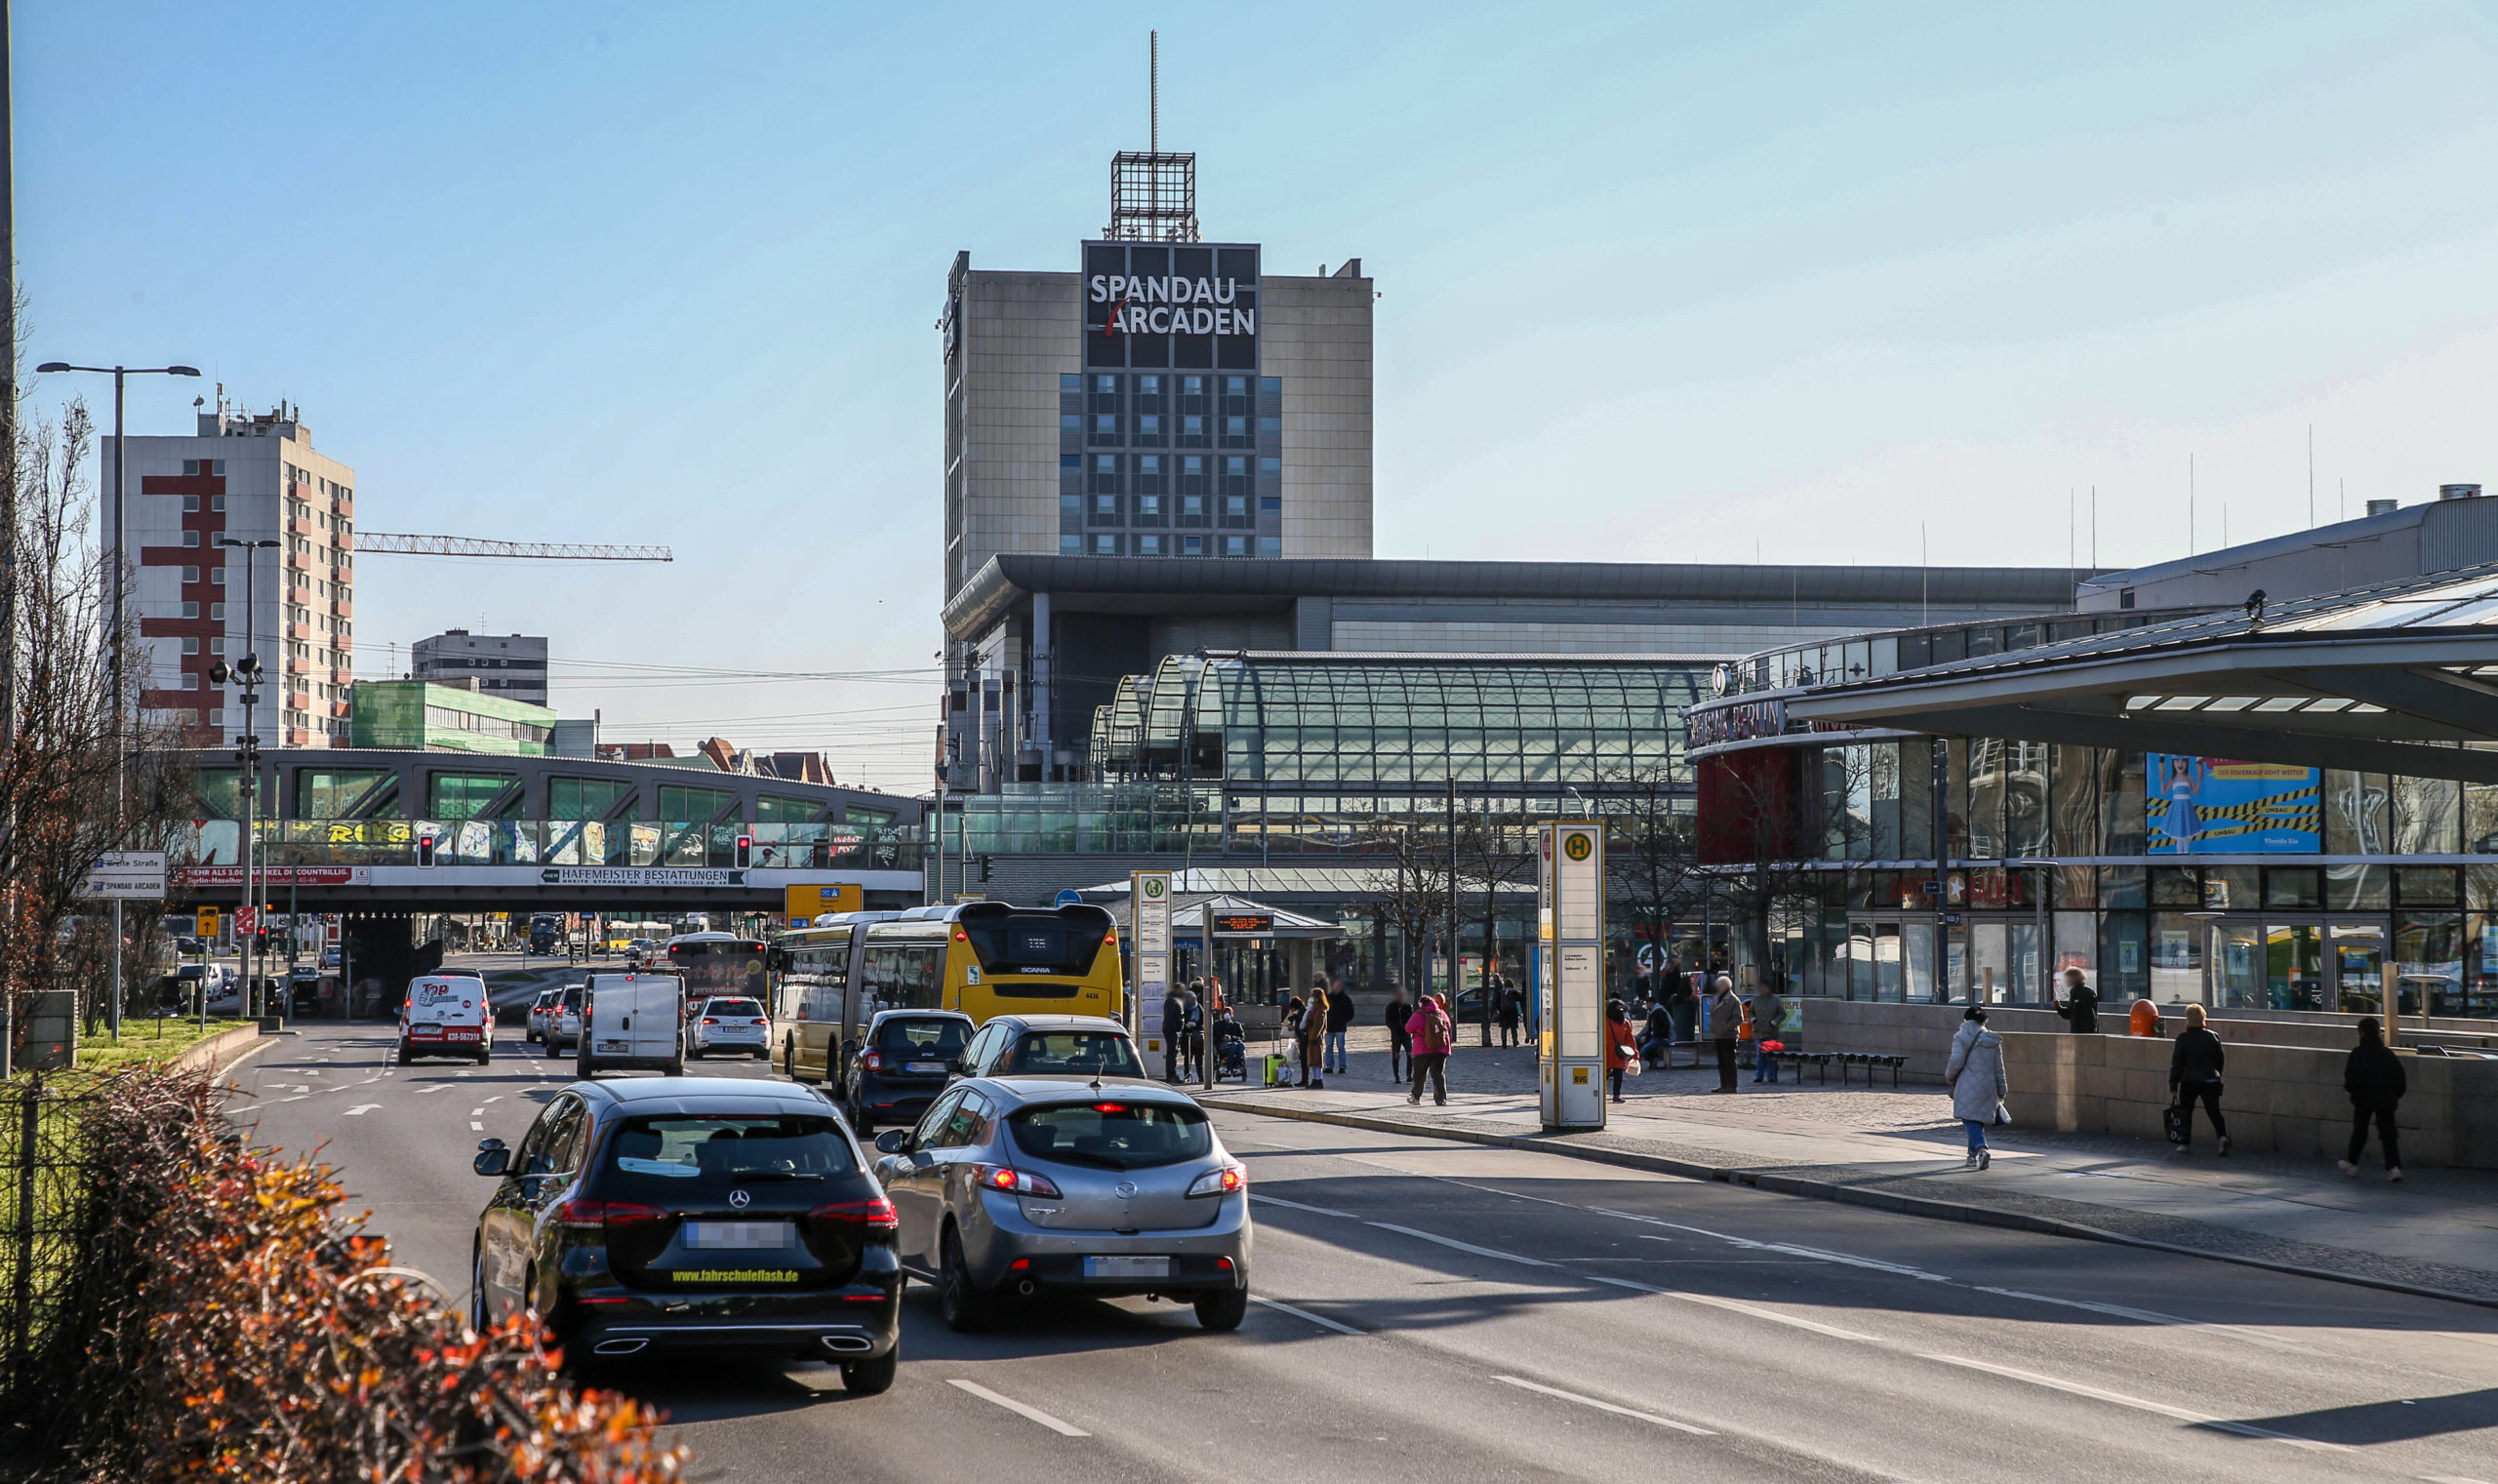 Immer viel Verkehr an der Kreuzung des S-Bahnhofs Spandau. Foto: Imago/Andreas Gora